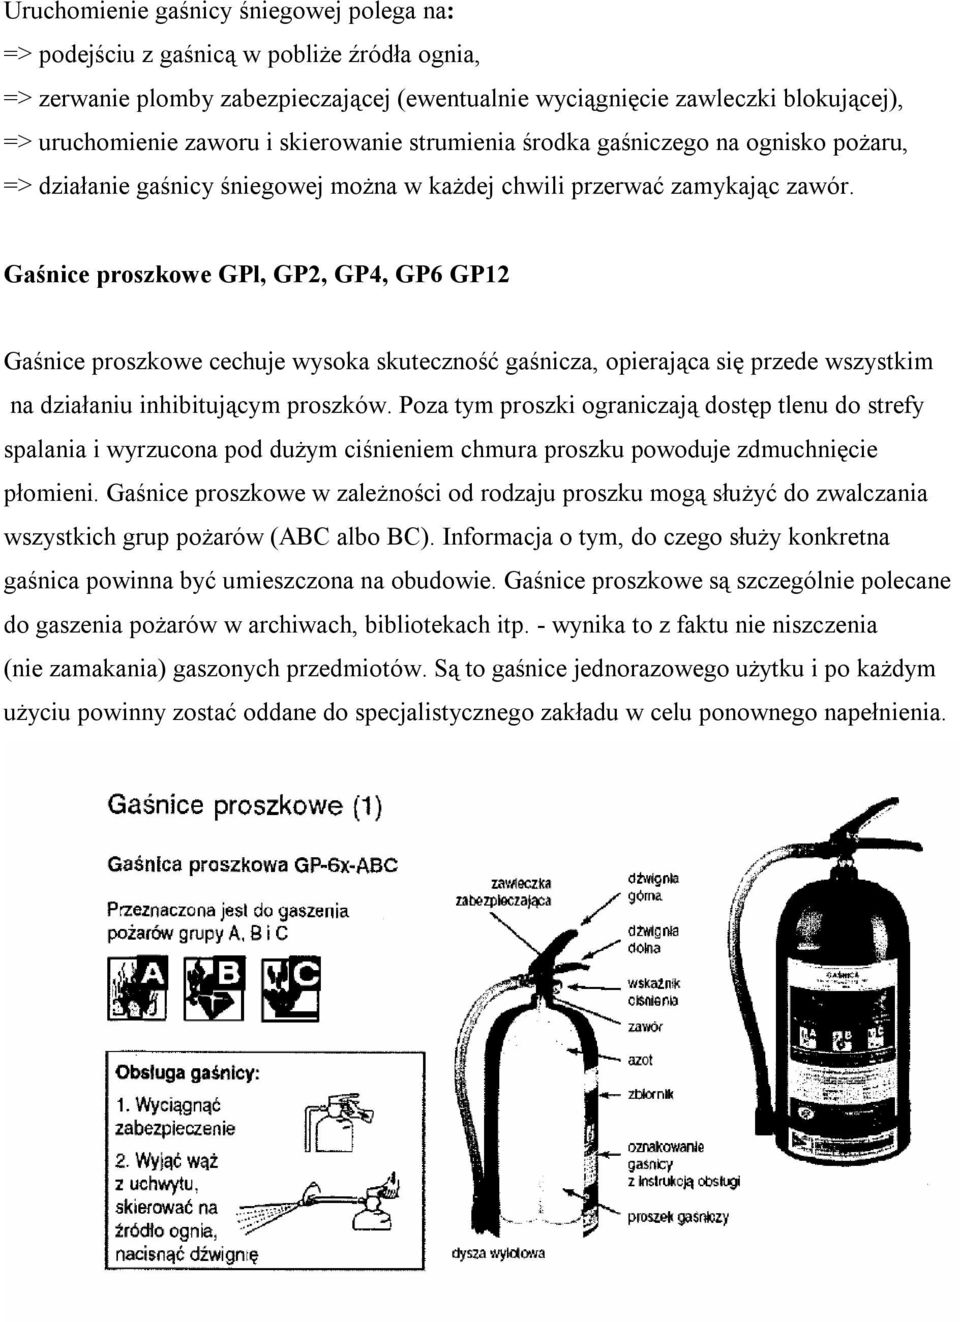 Gaśnice proszkowe GPl, GP2, GP4, GP6 GP12 Gaśnice proszkowe cechuje wysoka skuteczność gaśnicza, opierająca się przede wszystkim na działaniu inhibitującym proszków.